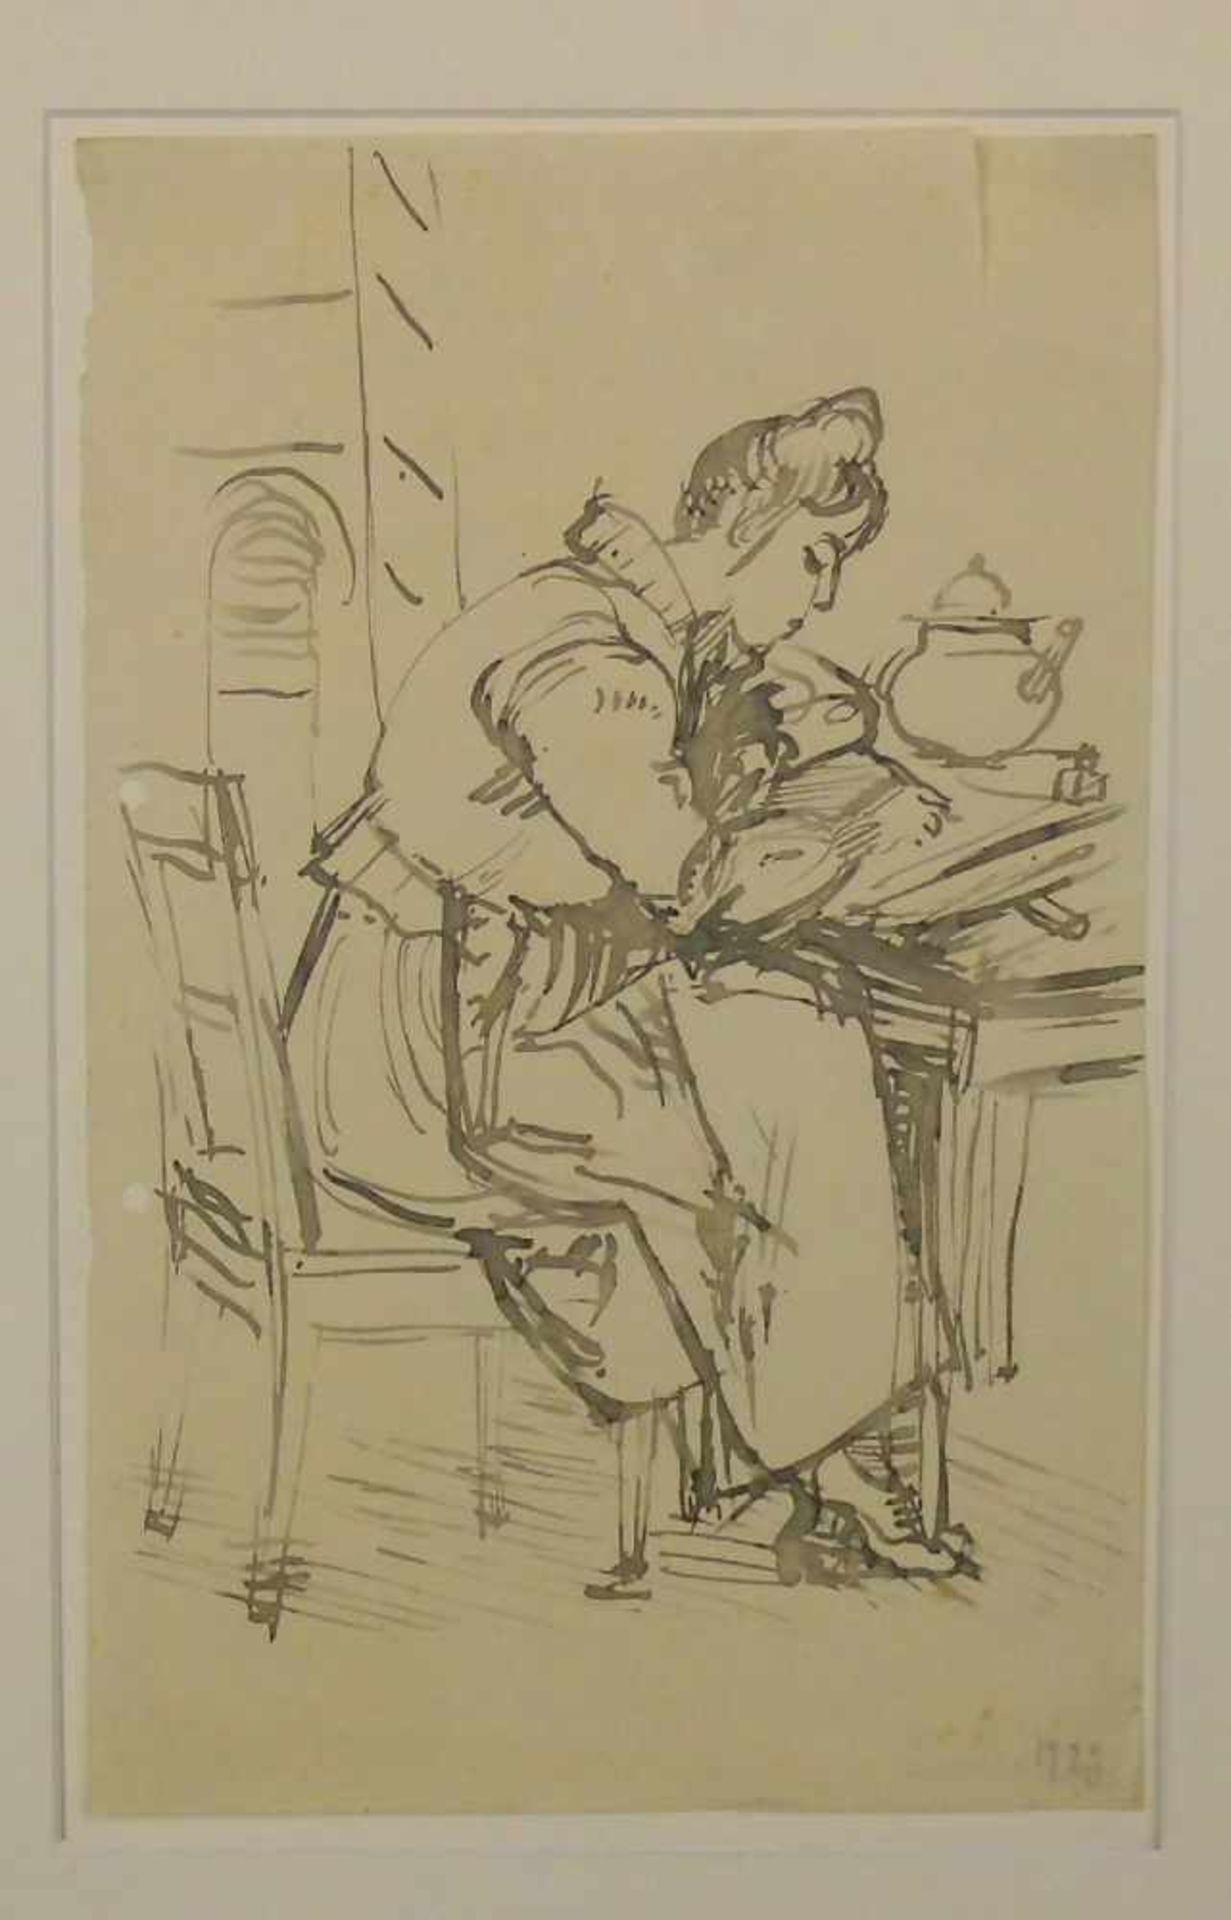 LAVIERTE TUSCHEZEICHNUNG: "Frau beim Schreiben eines Briefes", u. r. datiert 1923 und revers